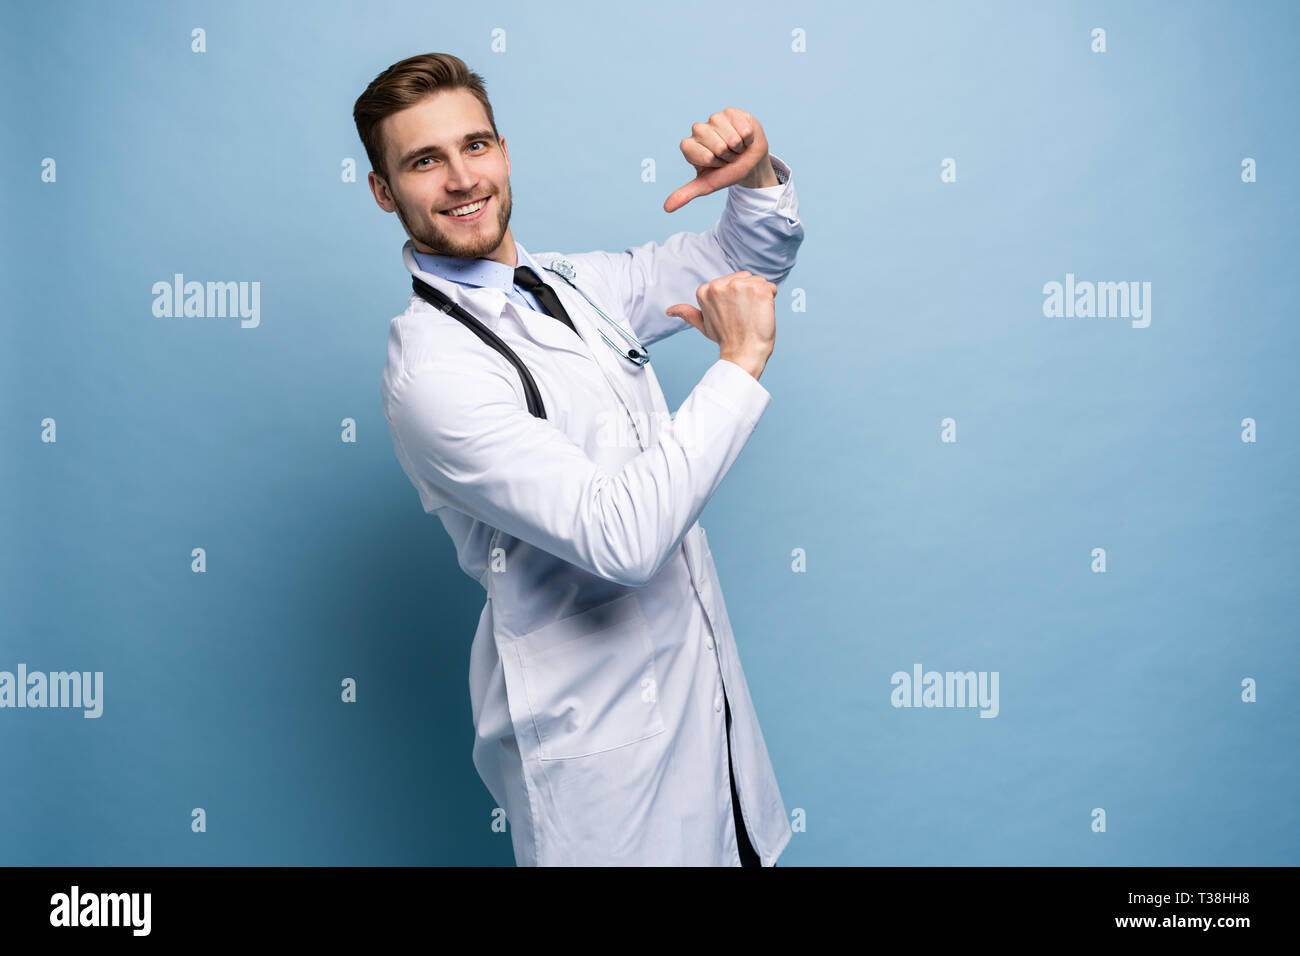 Chirurg Arzt Mann stolz und selbstbewusst in Liebe sich Konzept zufrieden isoliert auf Hellblau. Stockfoto